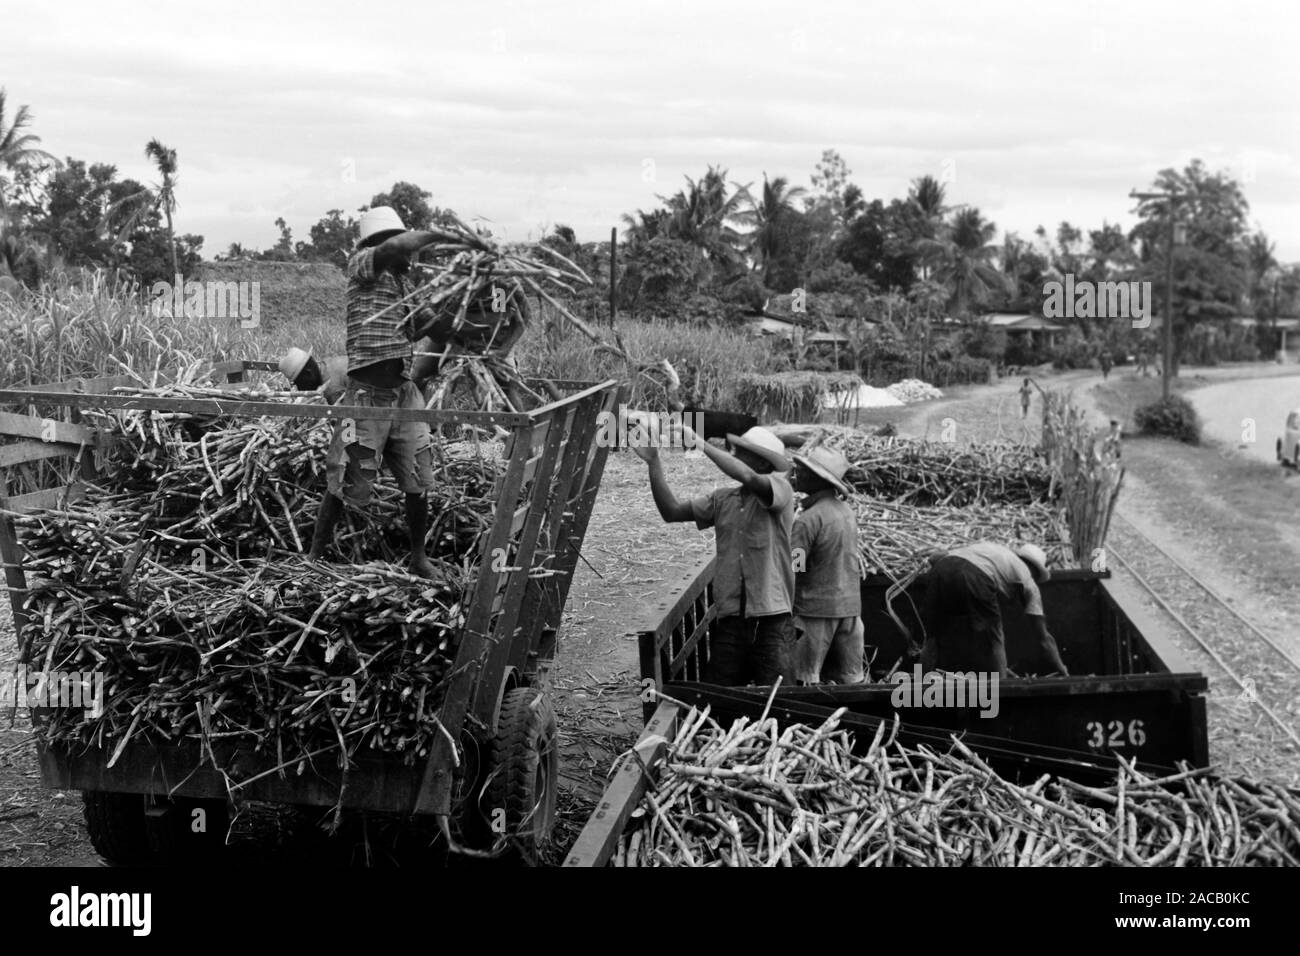 Zuckerrohrumschlag - eines der ser quelques Exportgüter Haitis, 1967. Chiffre d'affaires de la canne à sucre, l'un des rares produits d'exportation d'Haïti, 1967. Banque D'Images